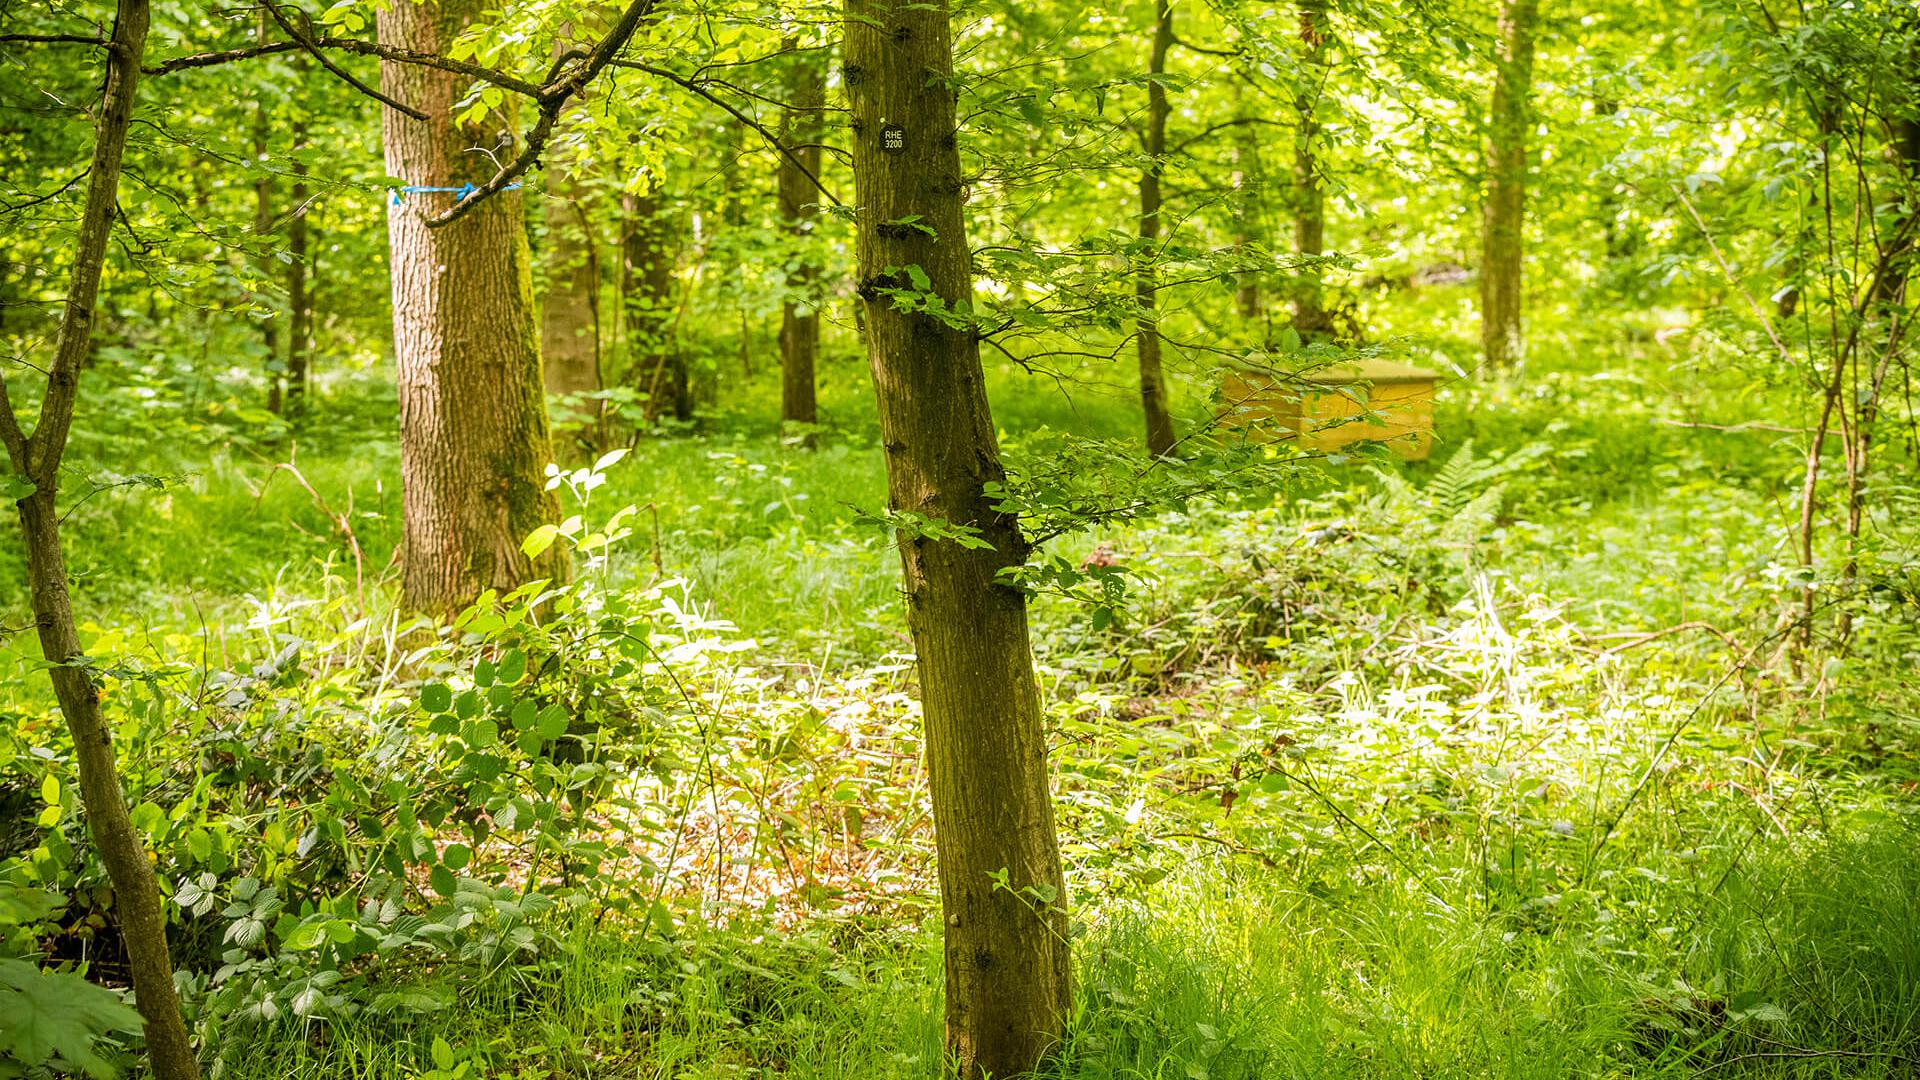 Ahorn, Eiche, Hainbuche, Linde und Haselnuss prägen das natürliche Bild des Waldes im FriedWald Rheinau.